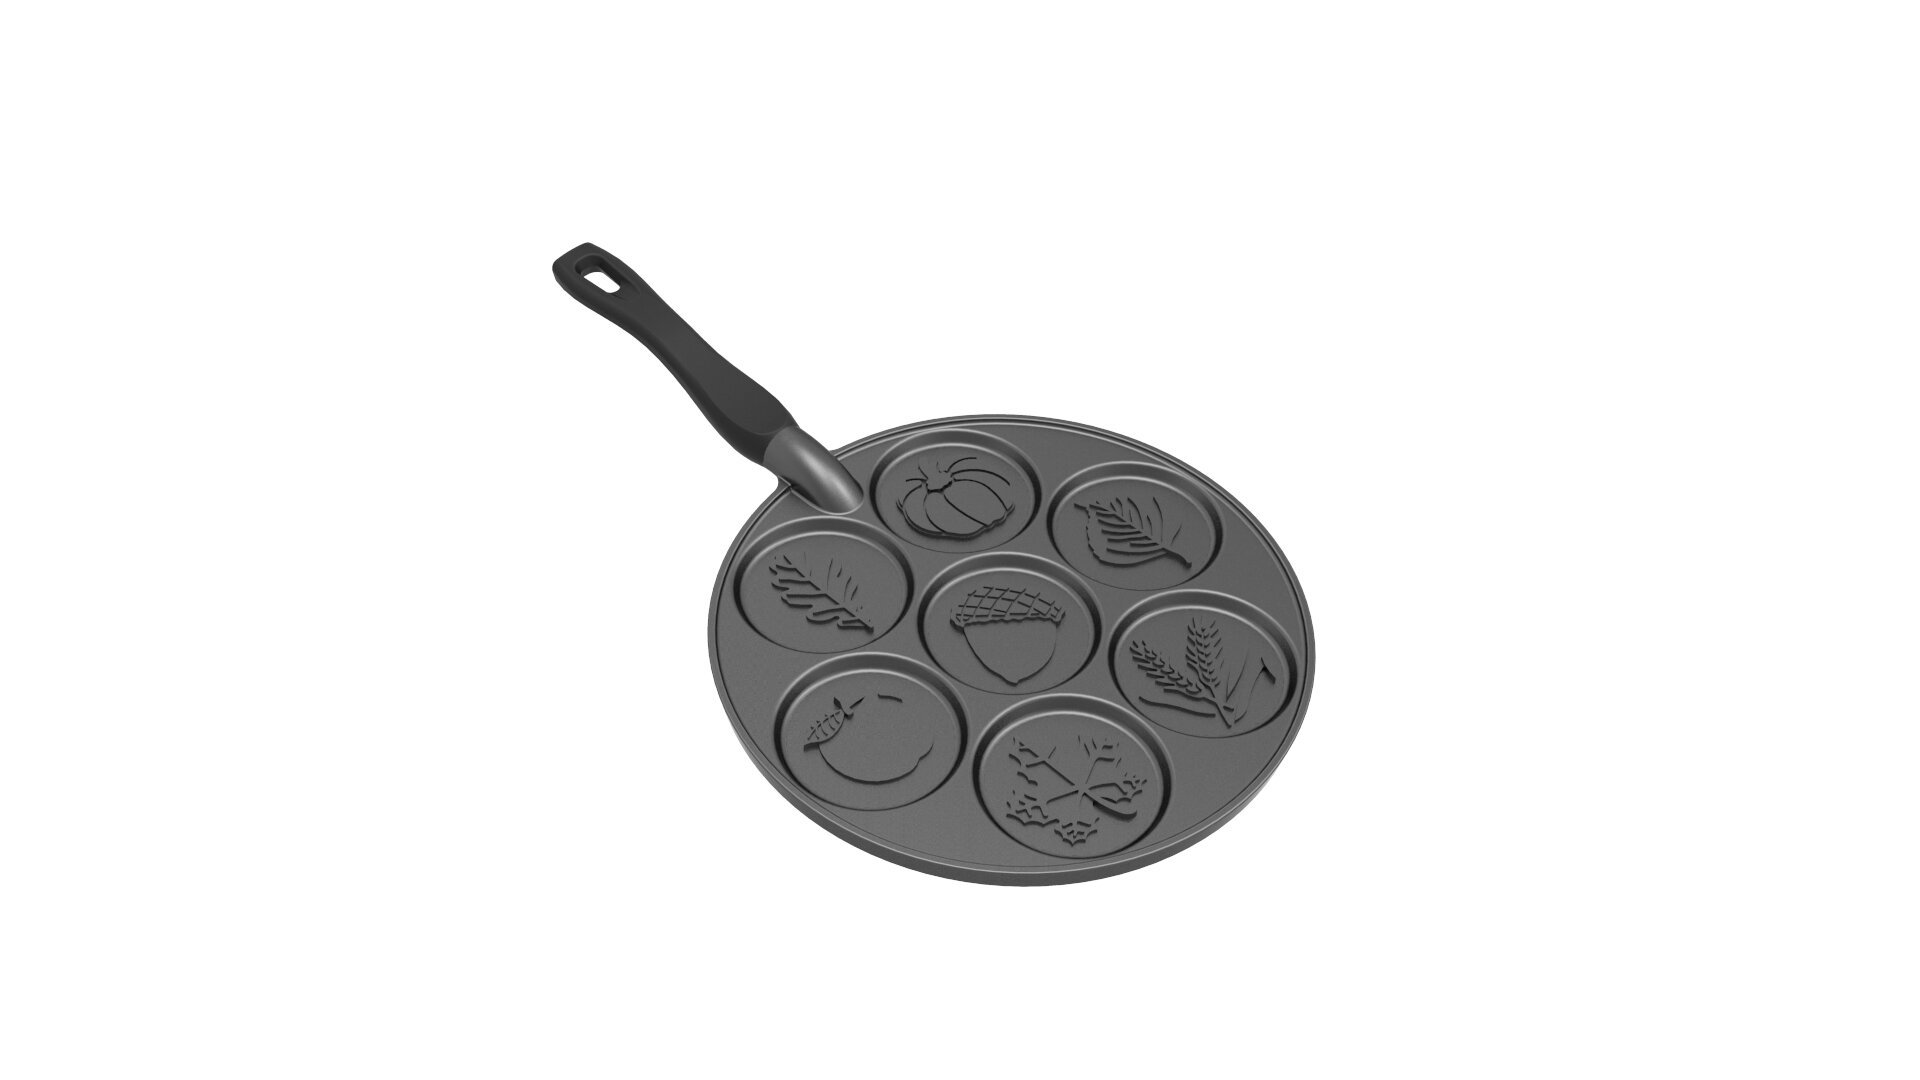 Nordic Ware Silver Dollar Pancake Pan + Reviews